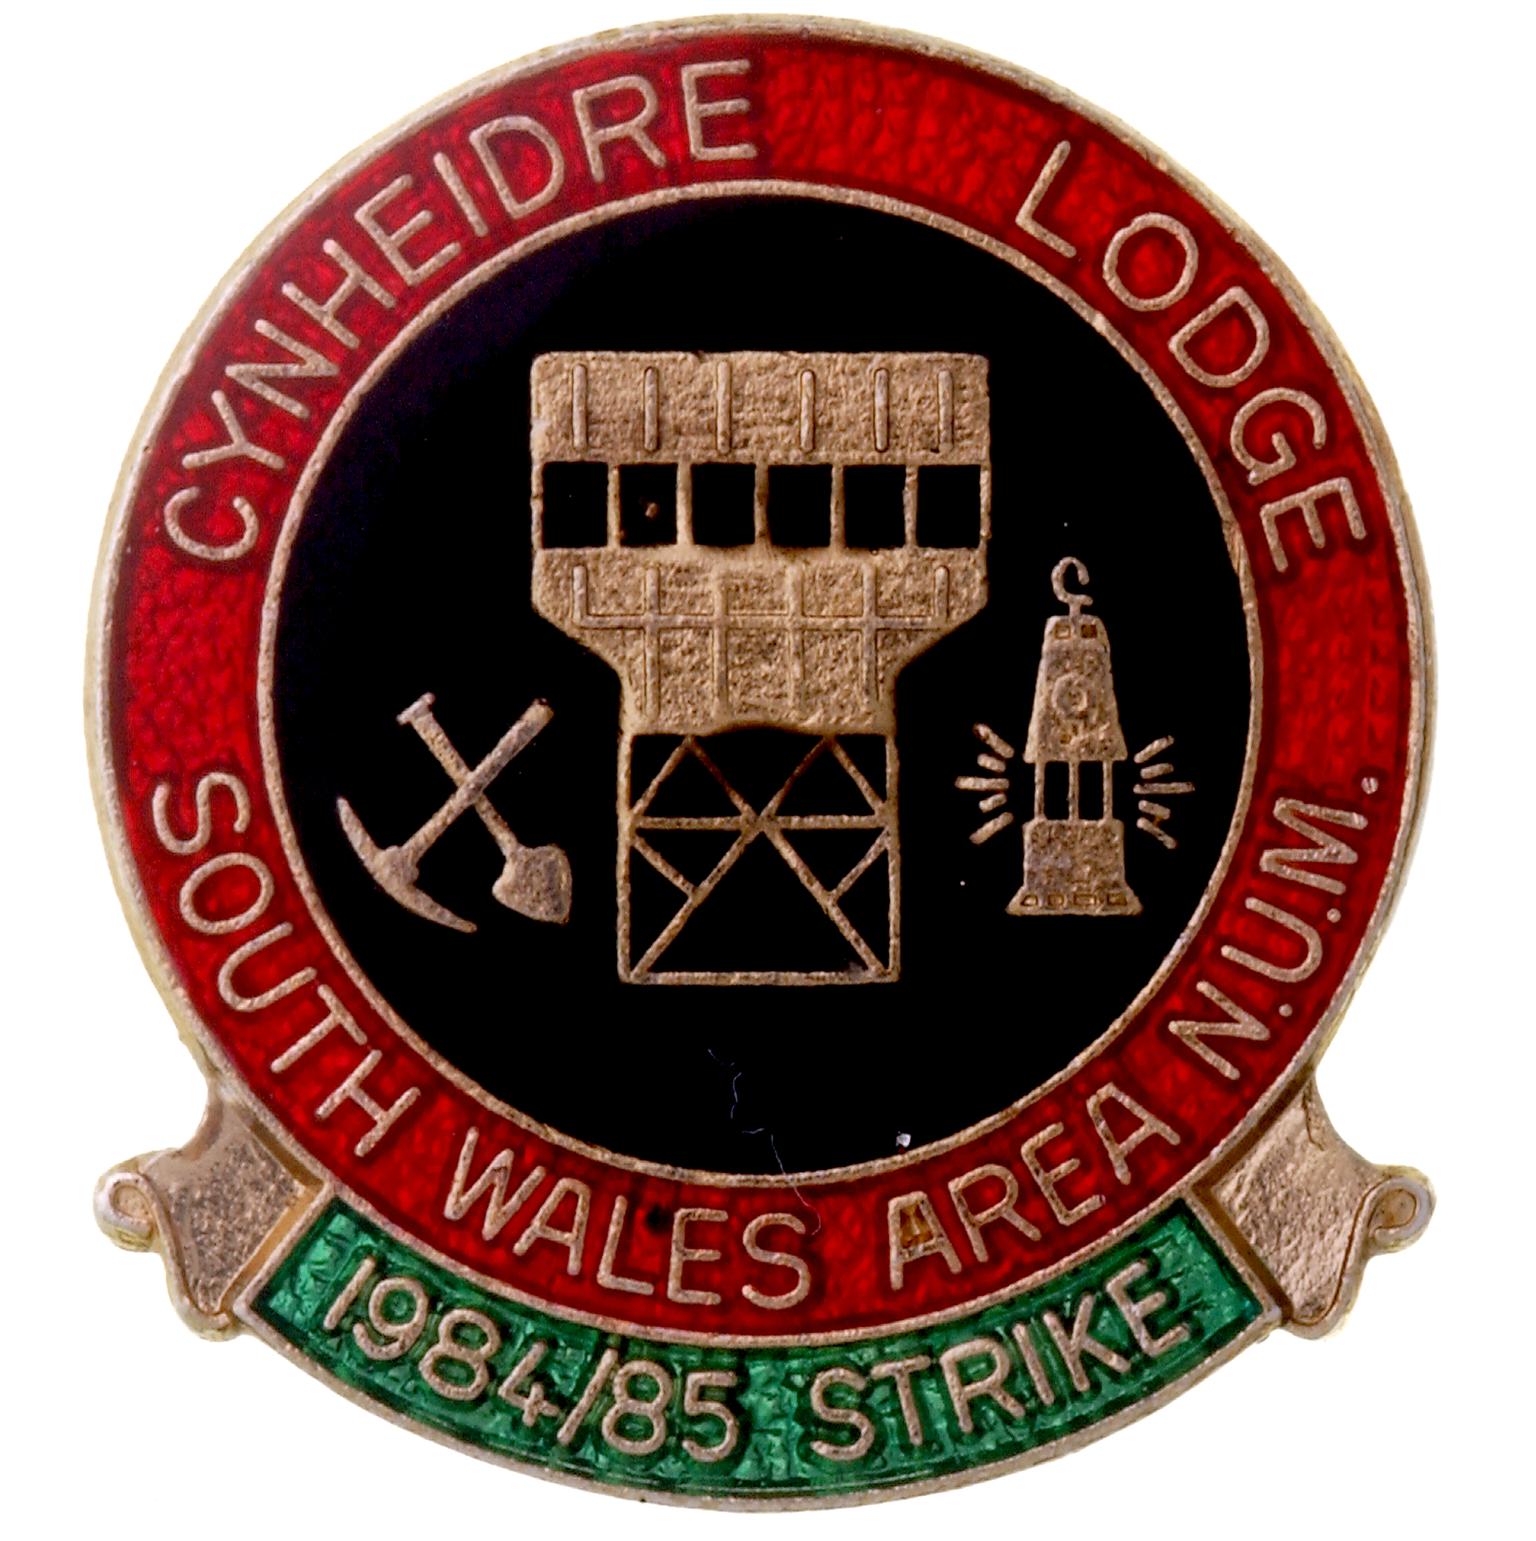 Cynheidre Lodge, strike badge